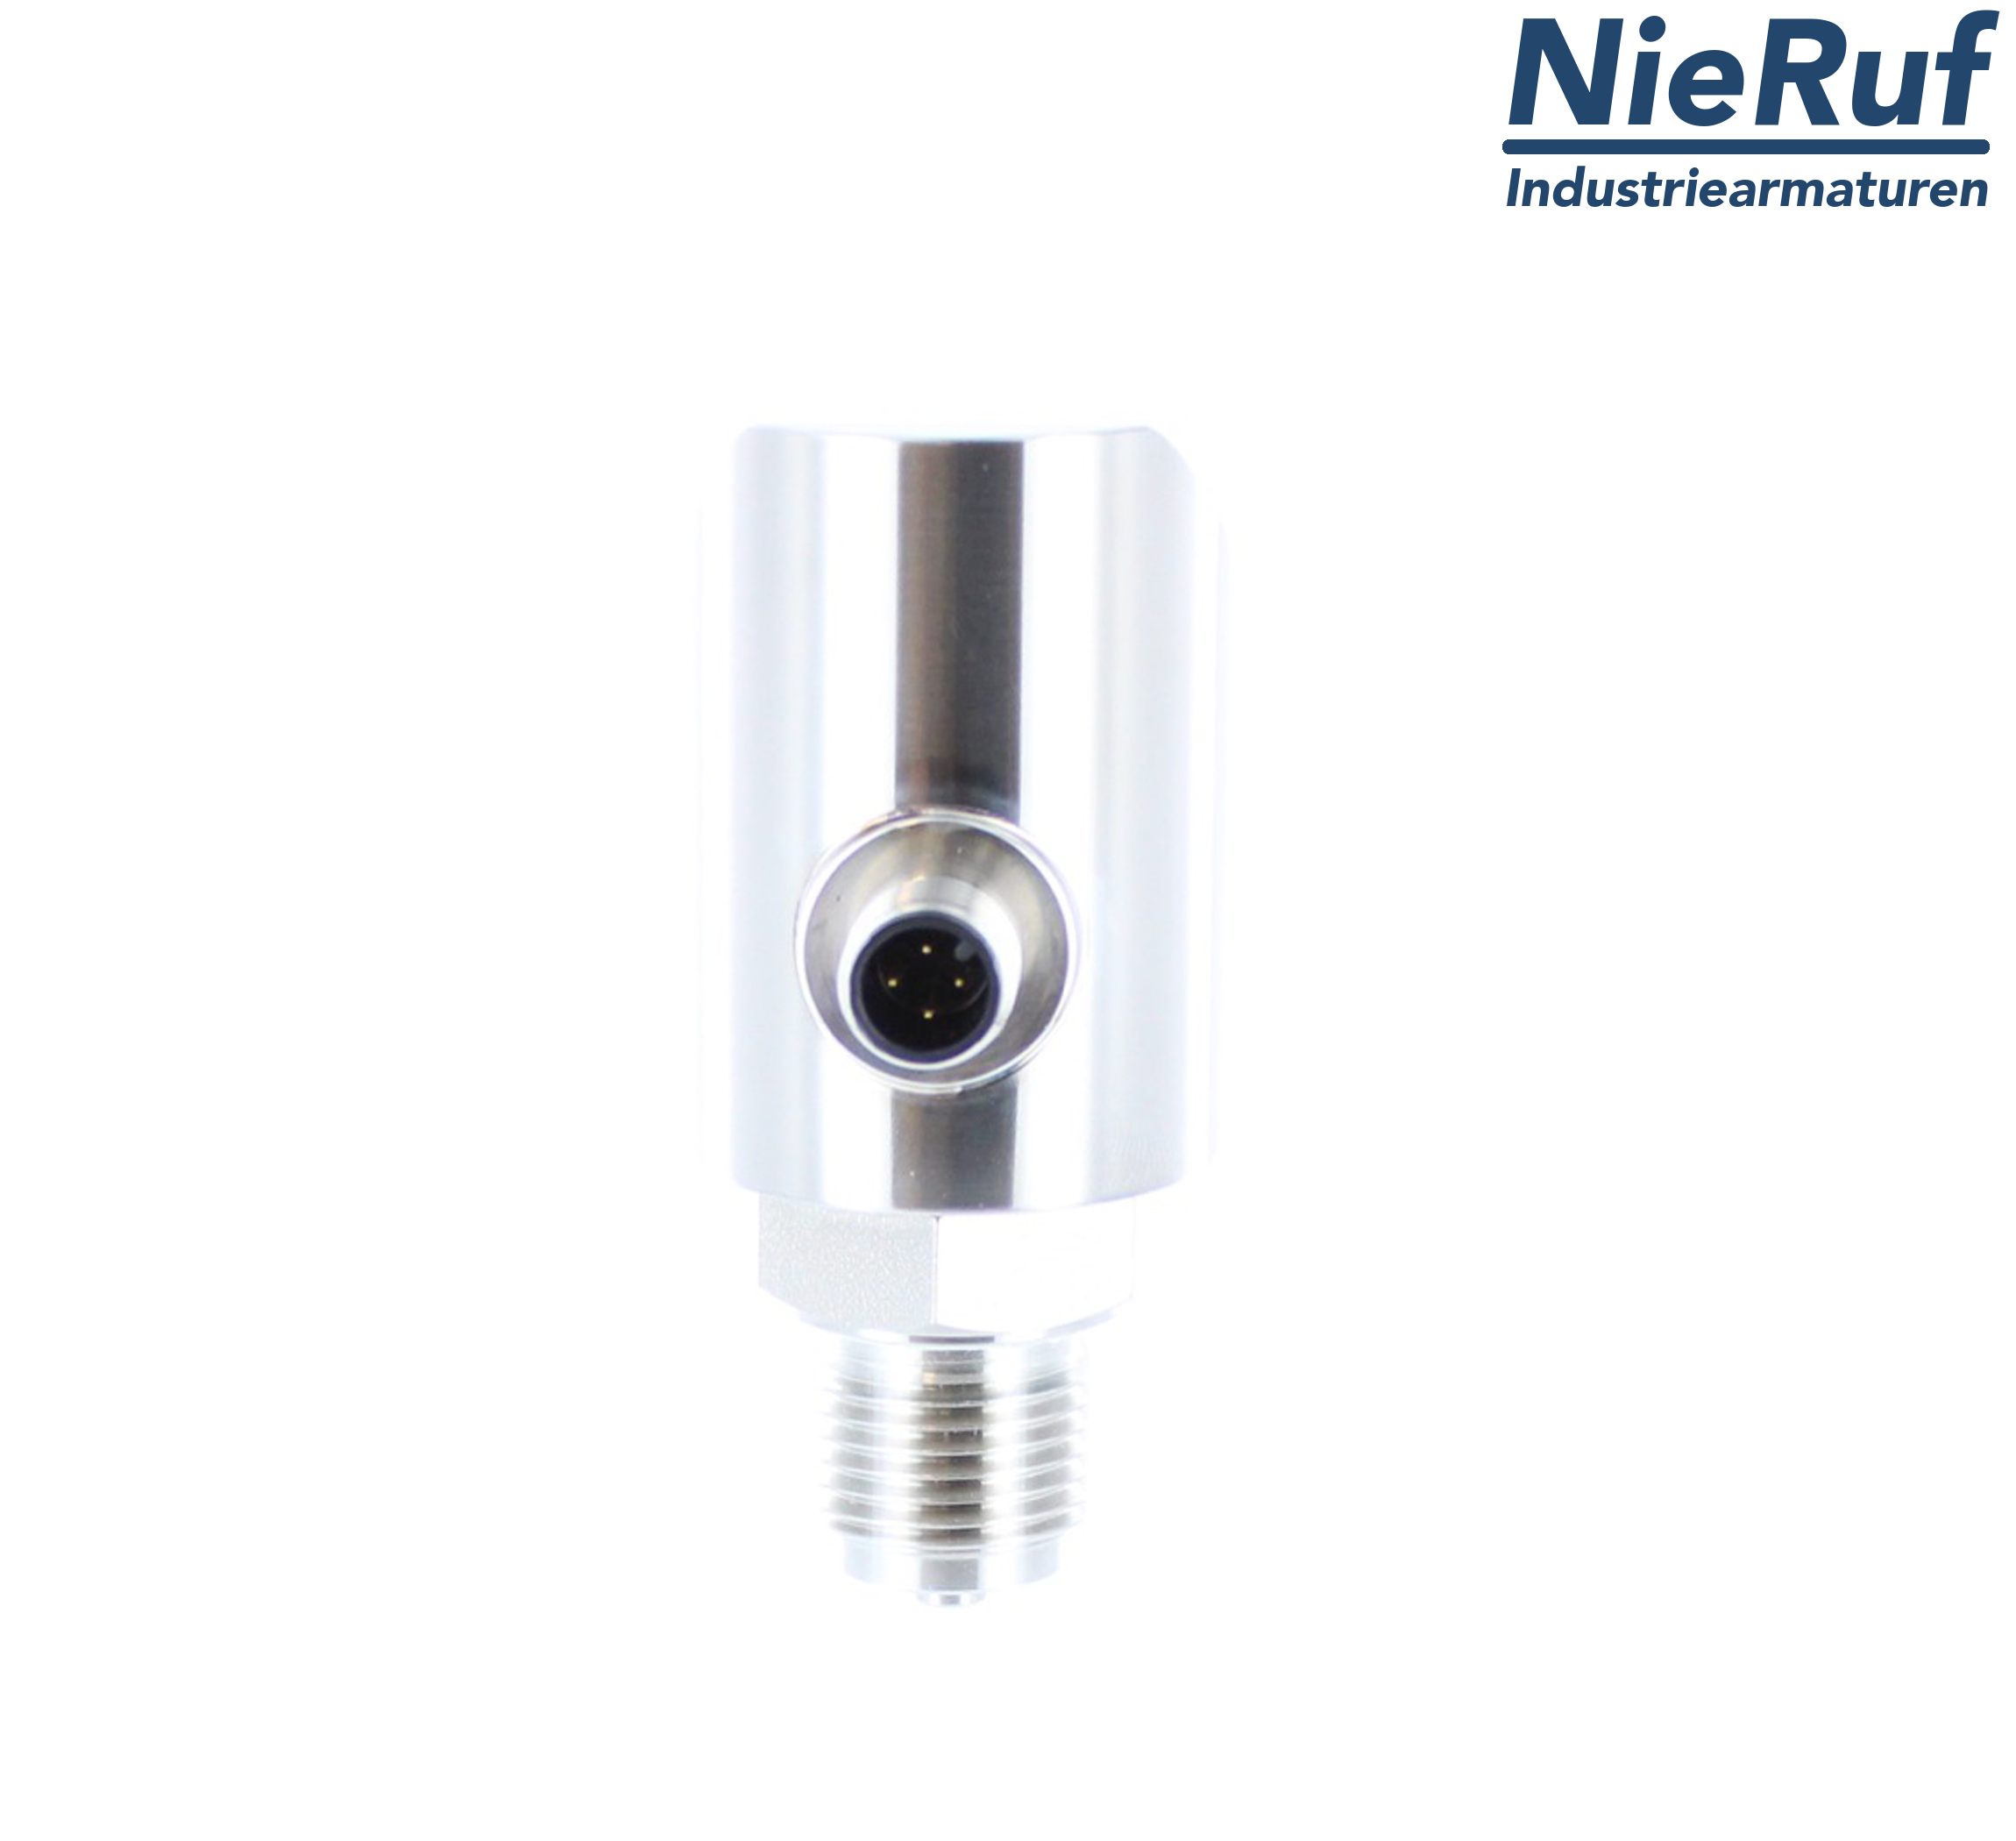 digital pressure sensor G 1/2" B IB 5-wire: 2xPNP, 1x4 - 20mA FPM 0,0 - 1,6 bar